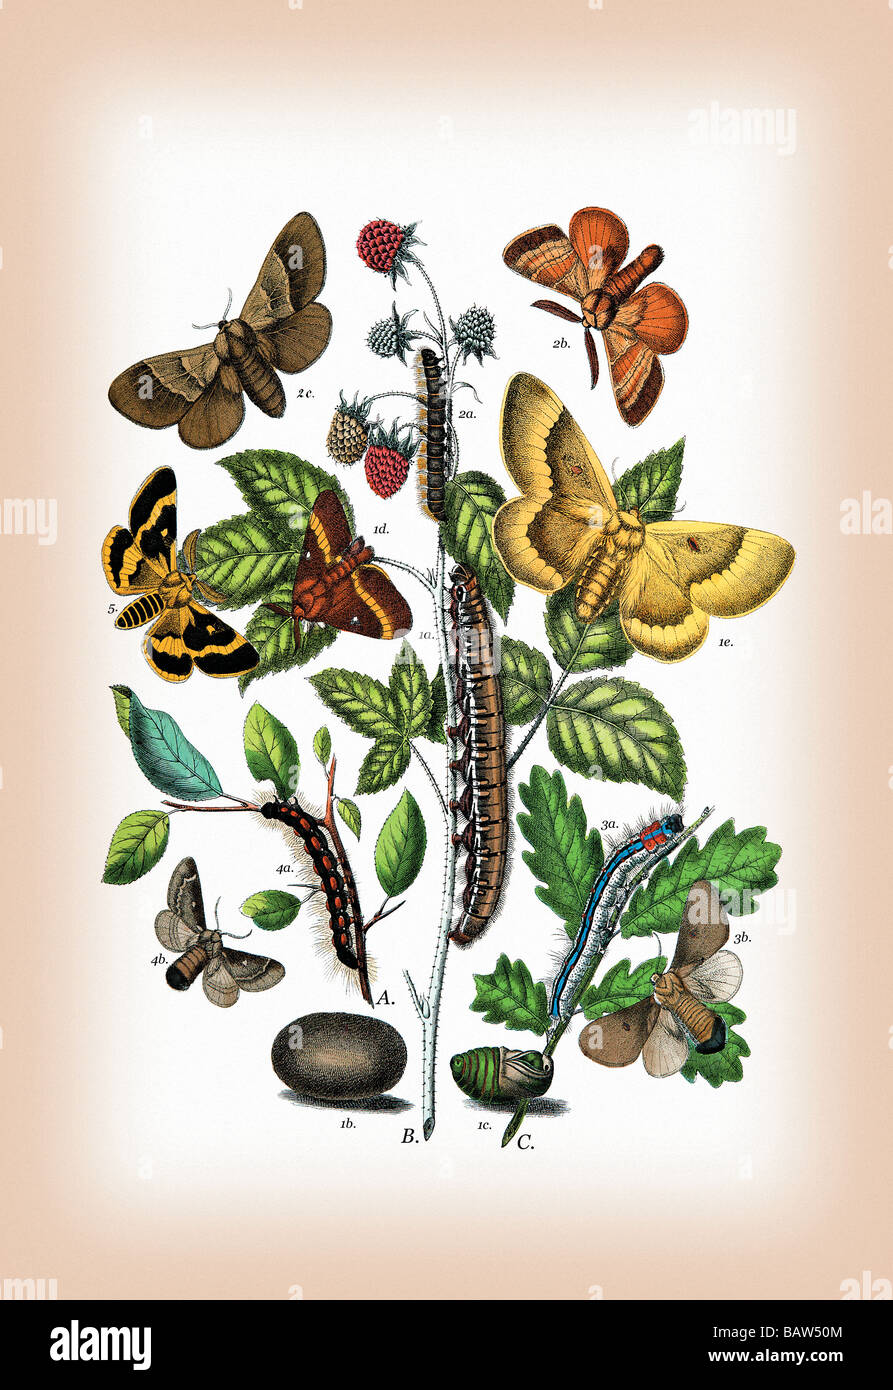 Moths: Eriogaster Rimicola,E. Catax,et al. Stock Photo